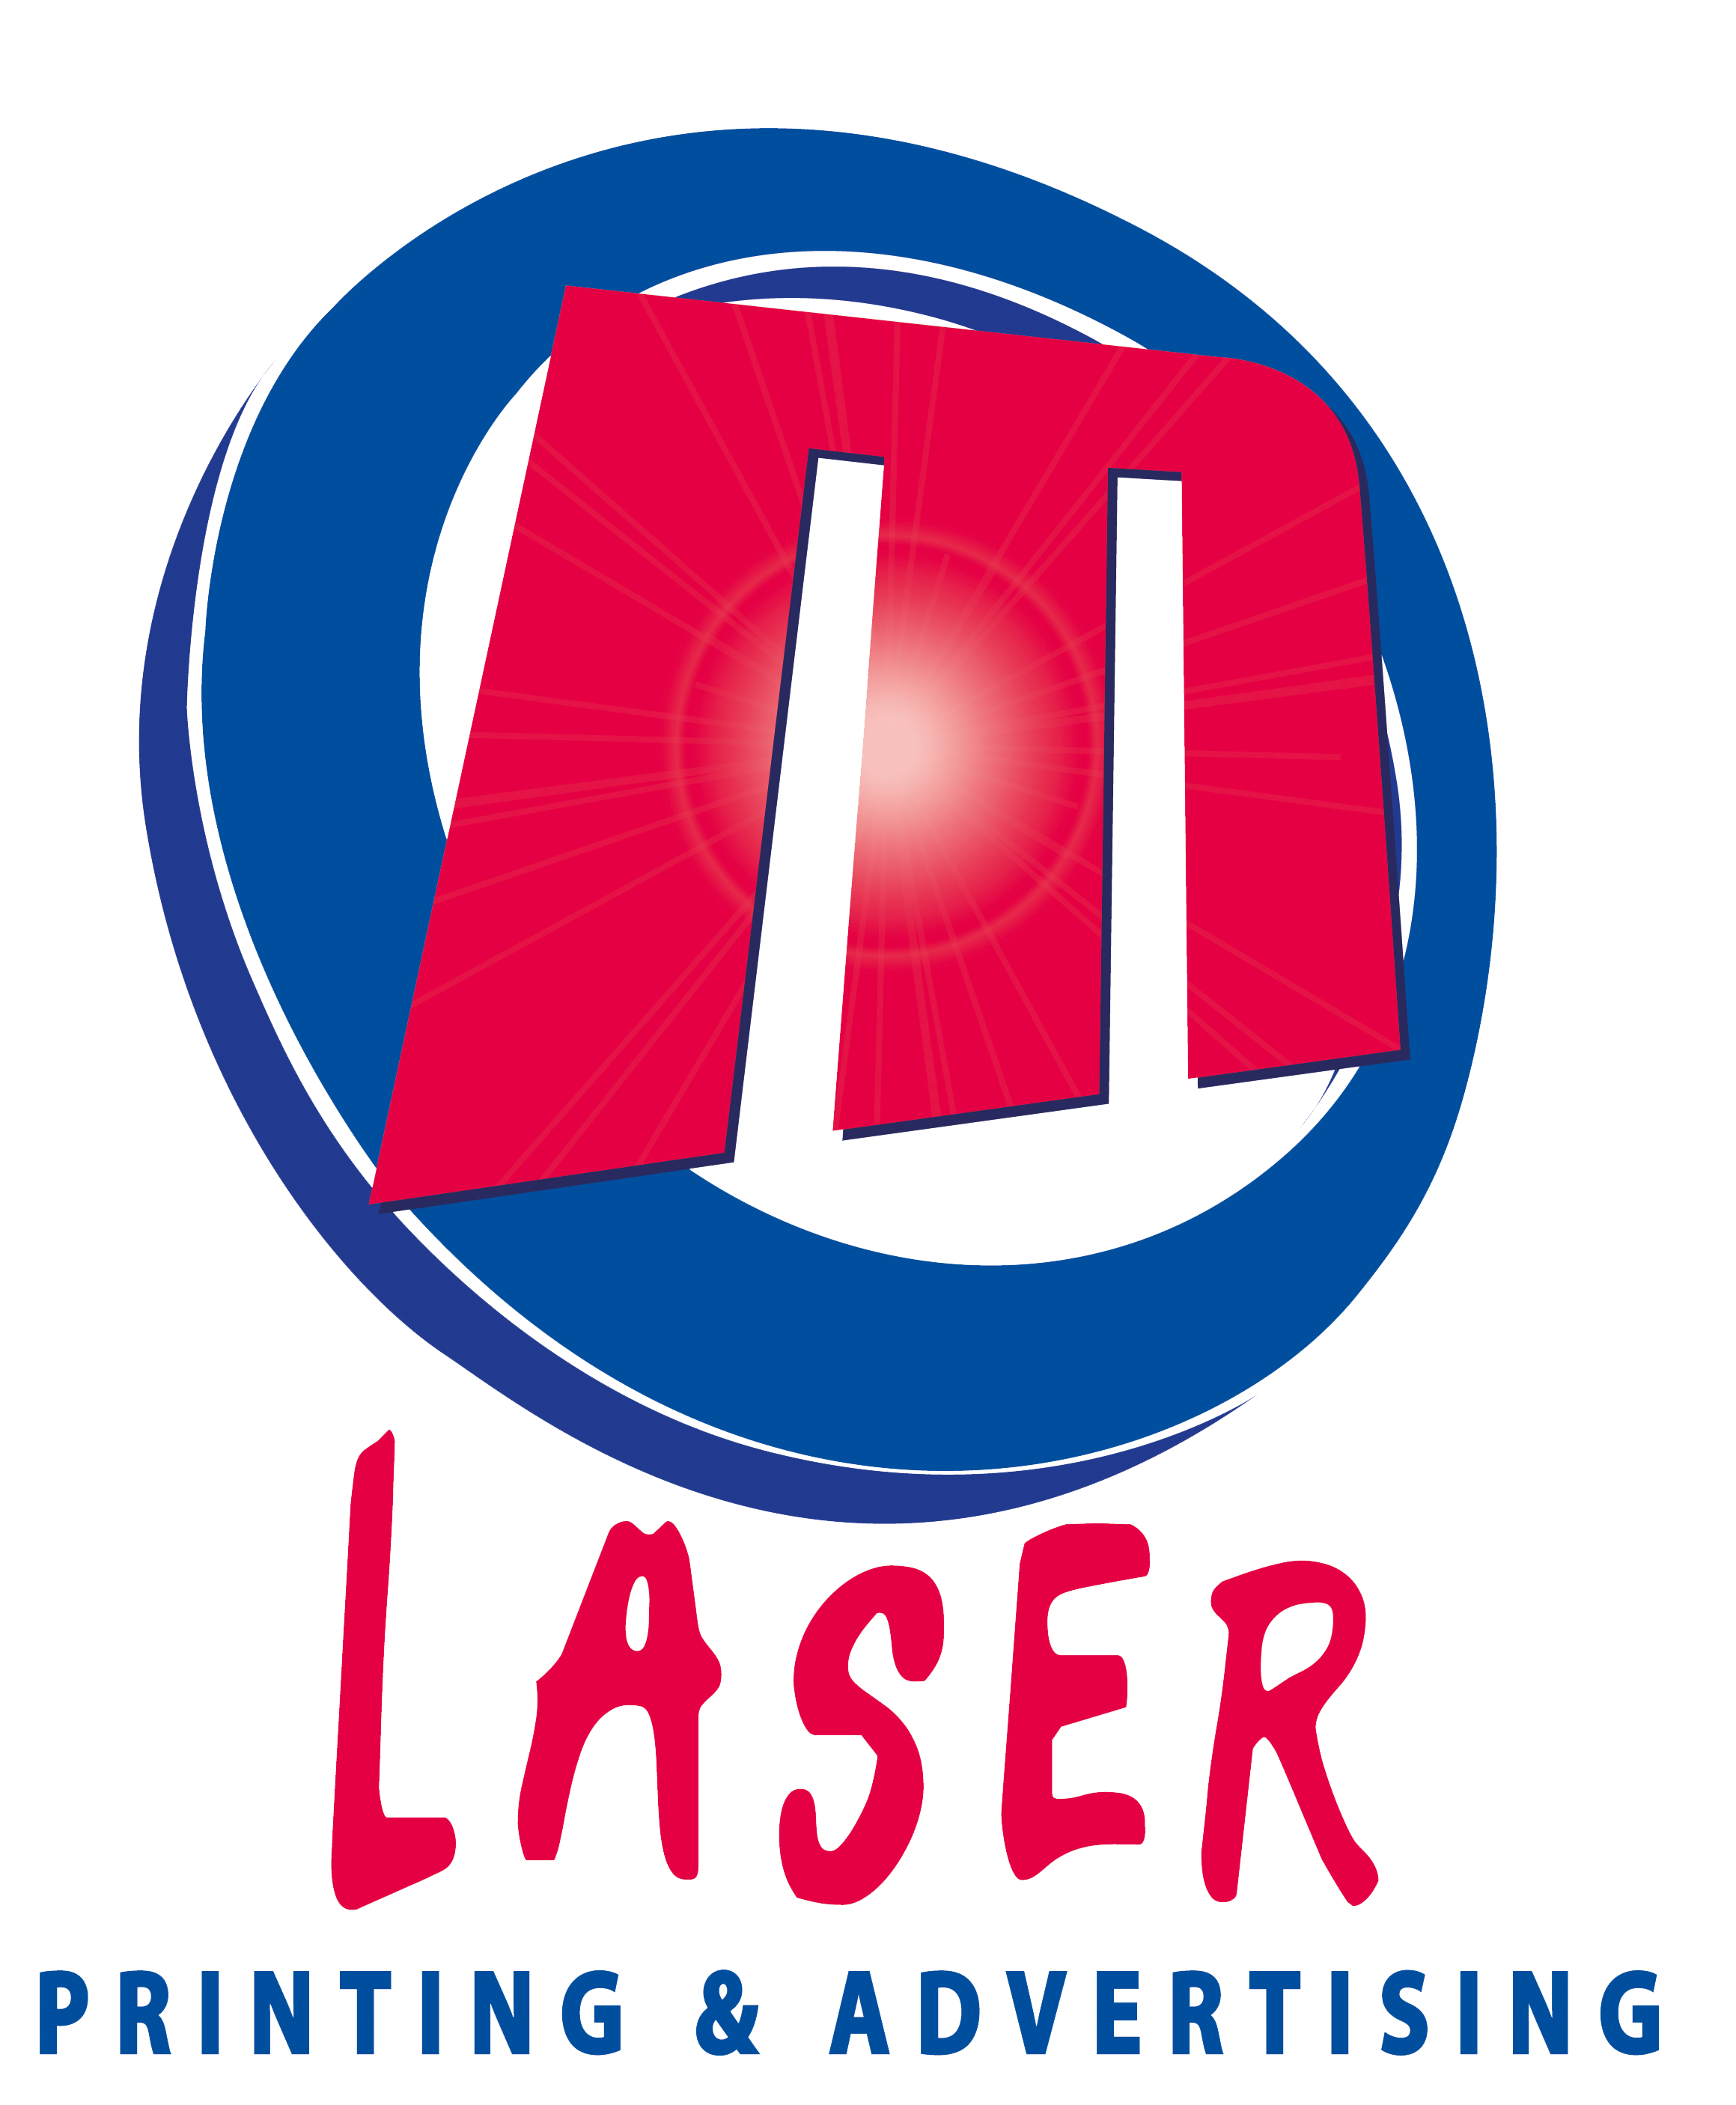 M.Laser printing & advertising